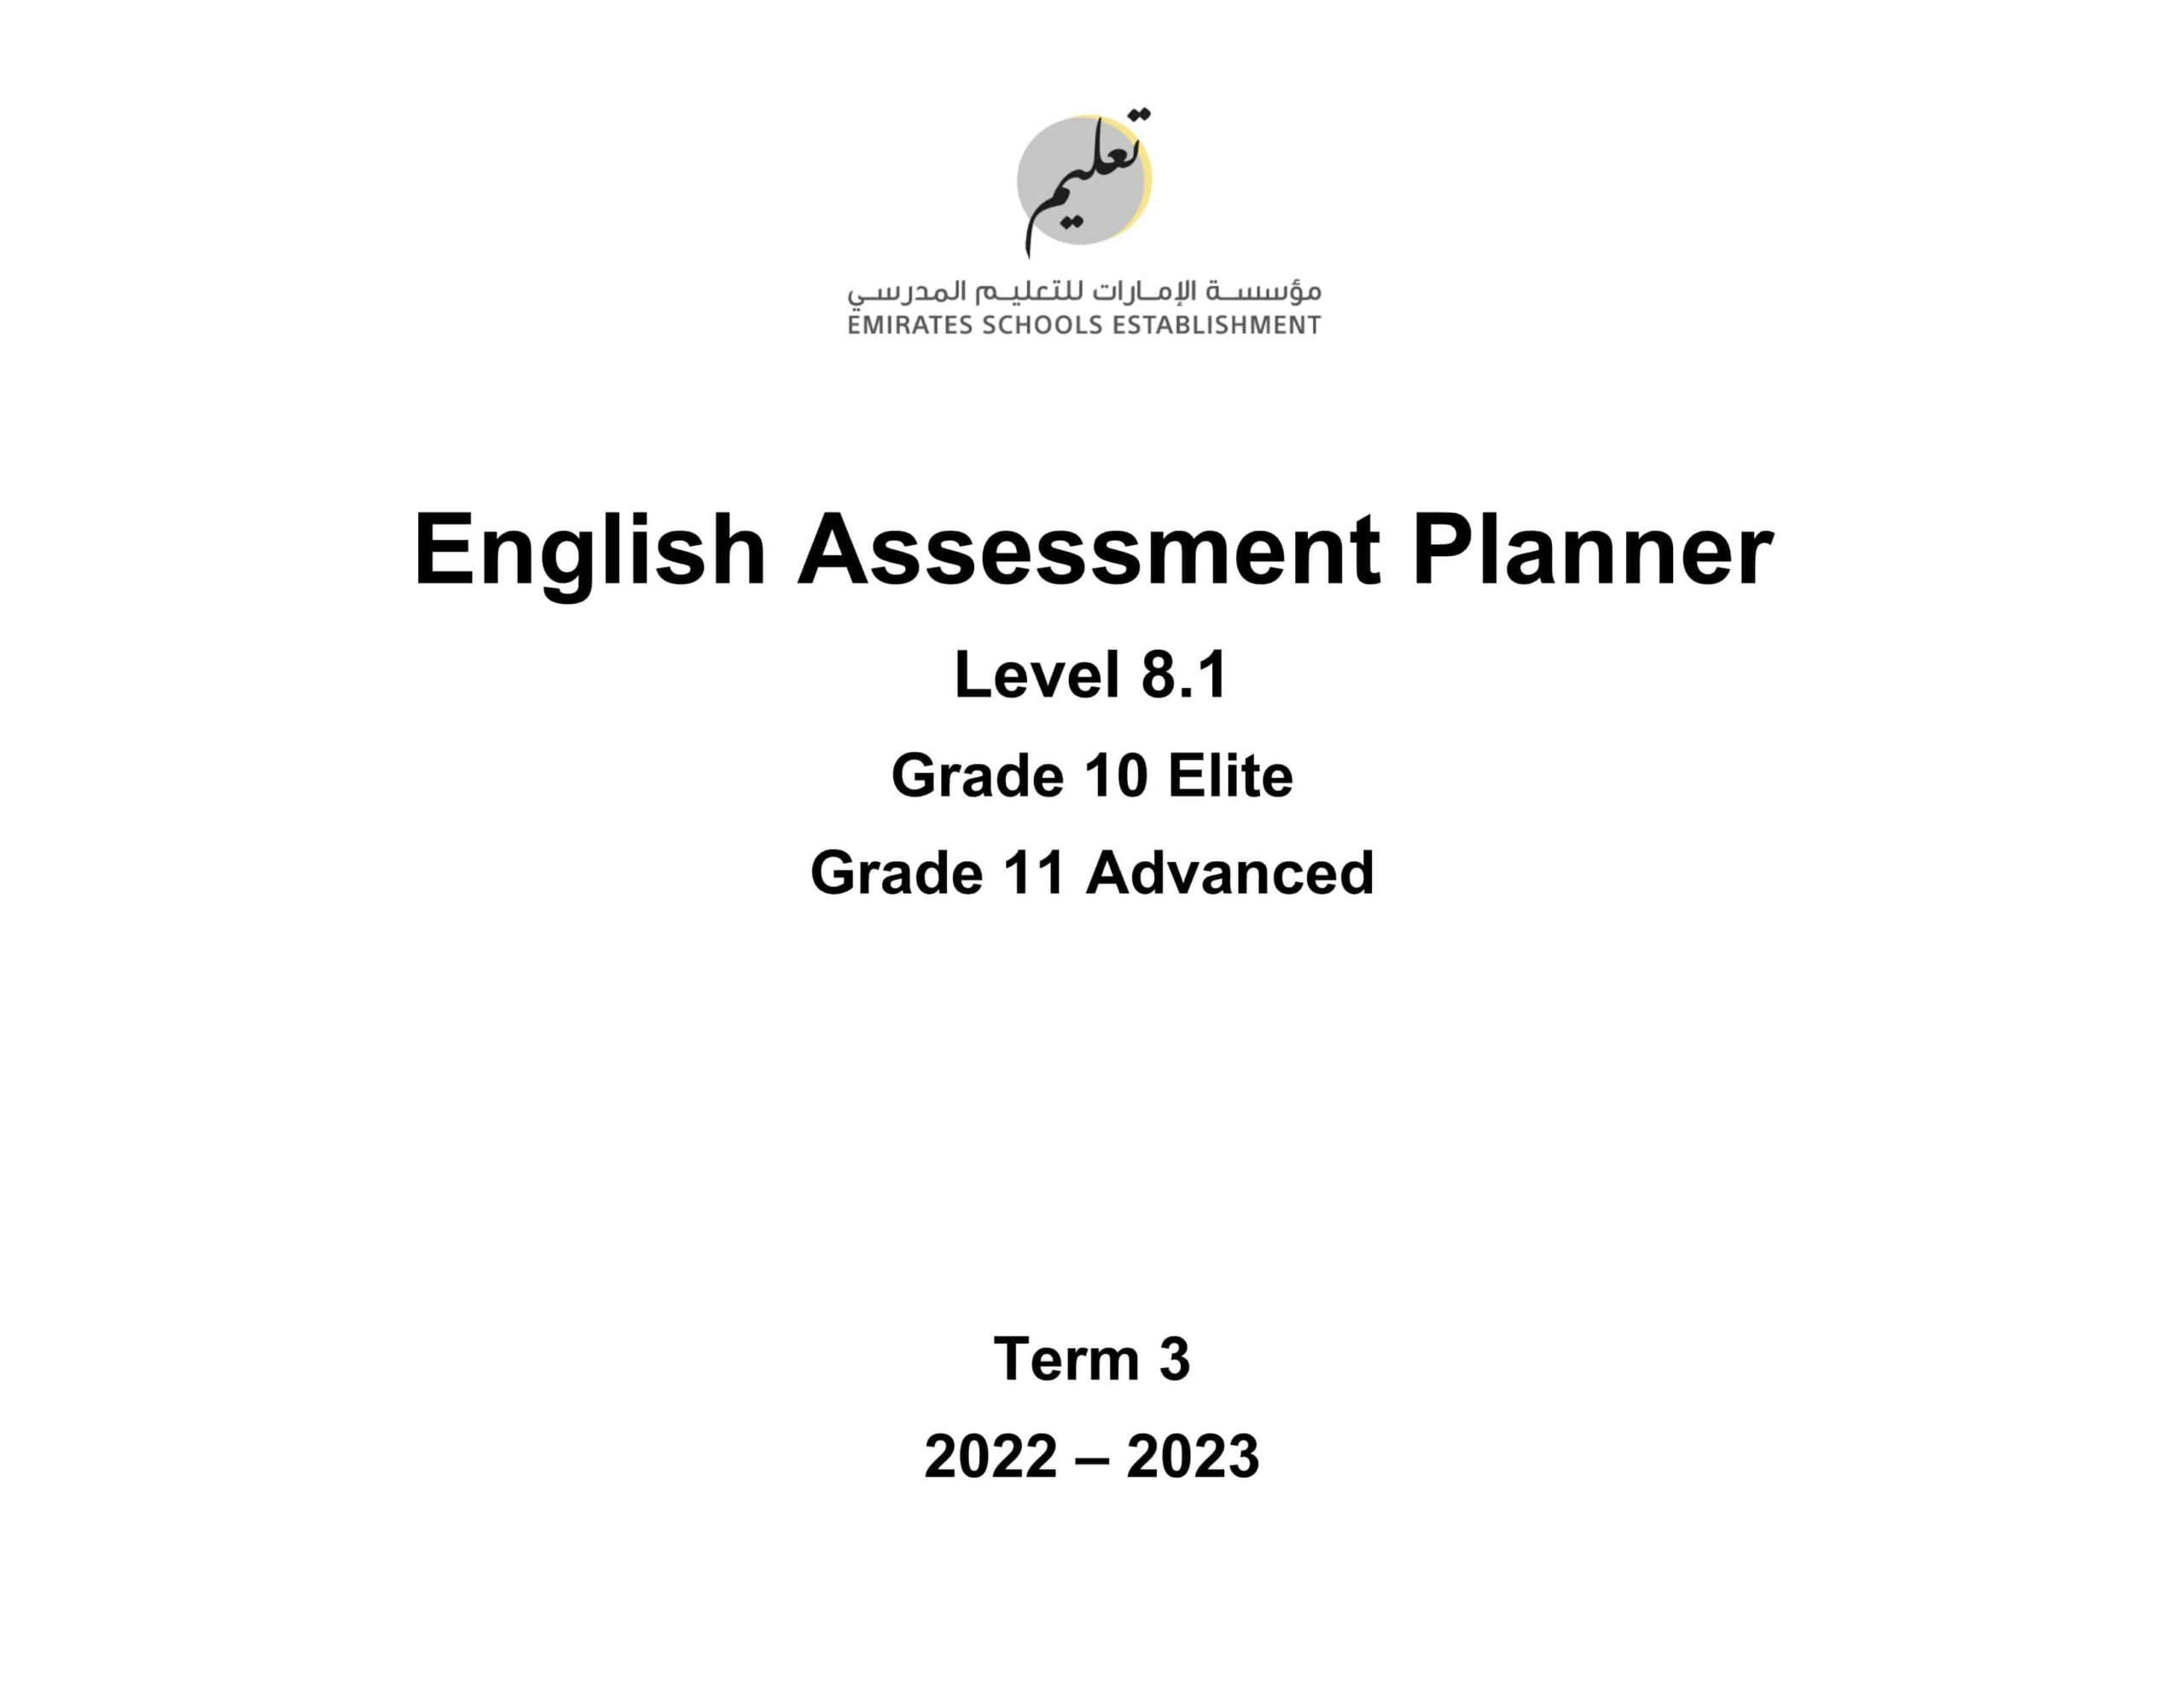 Assessment Planner اللغة الإنجليزية الصف العاشر Elite والحادي عشر Advanced الفصل الدراسي الثالث 2022-2023